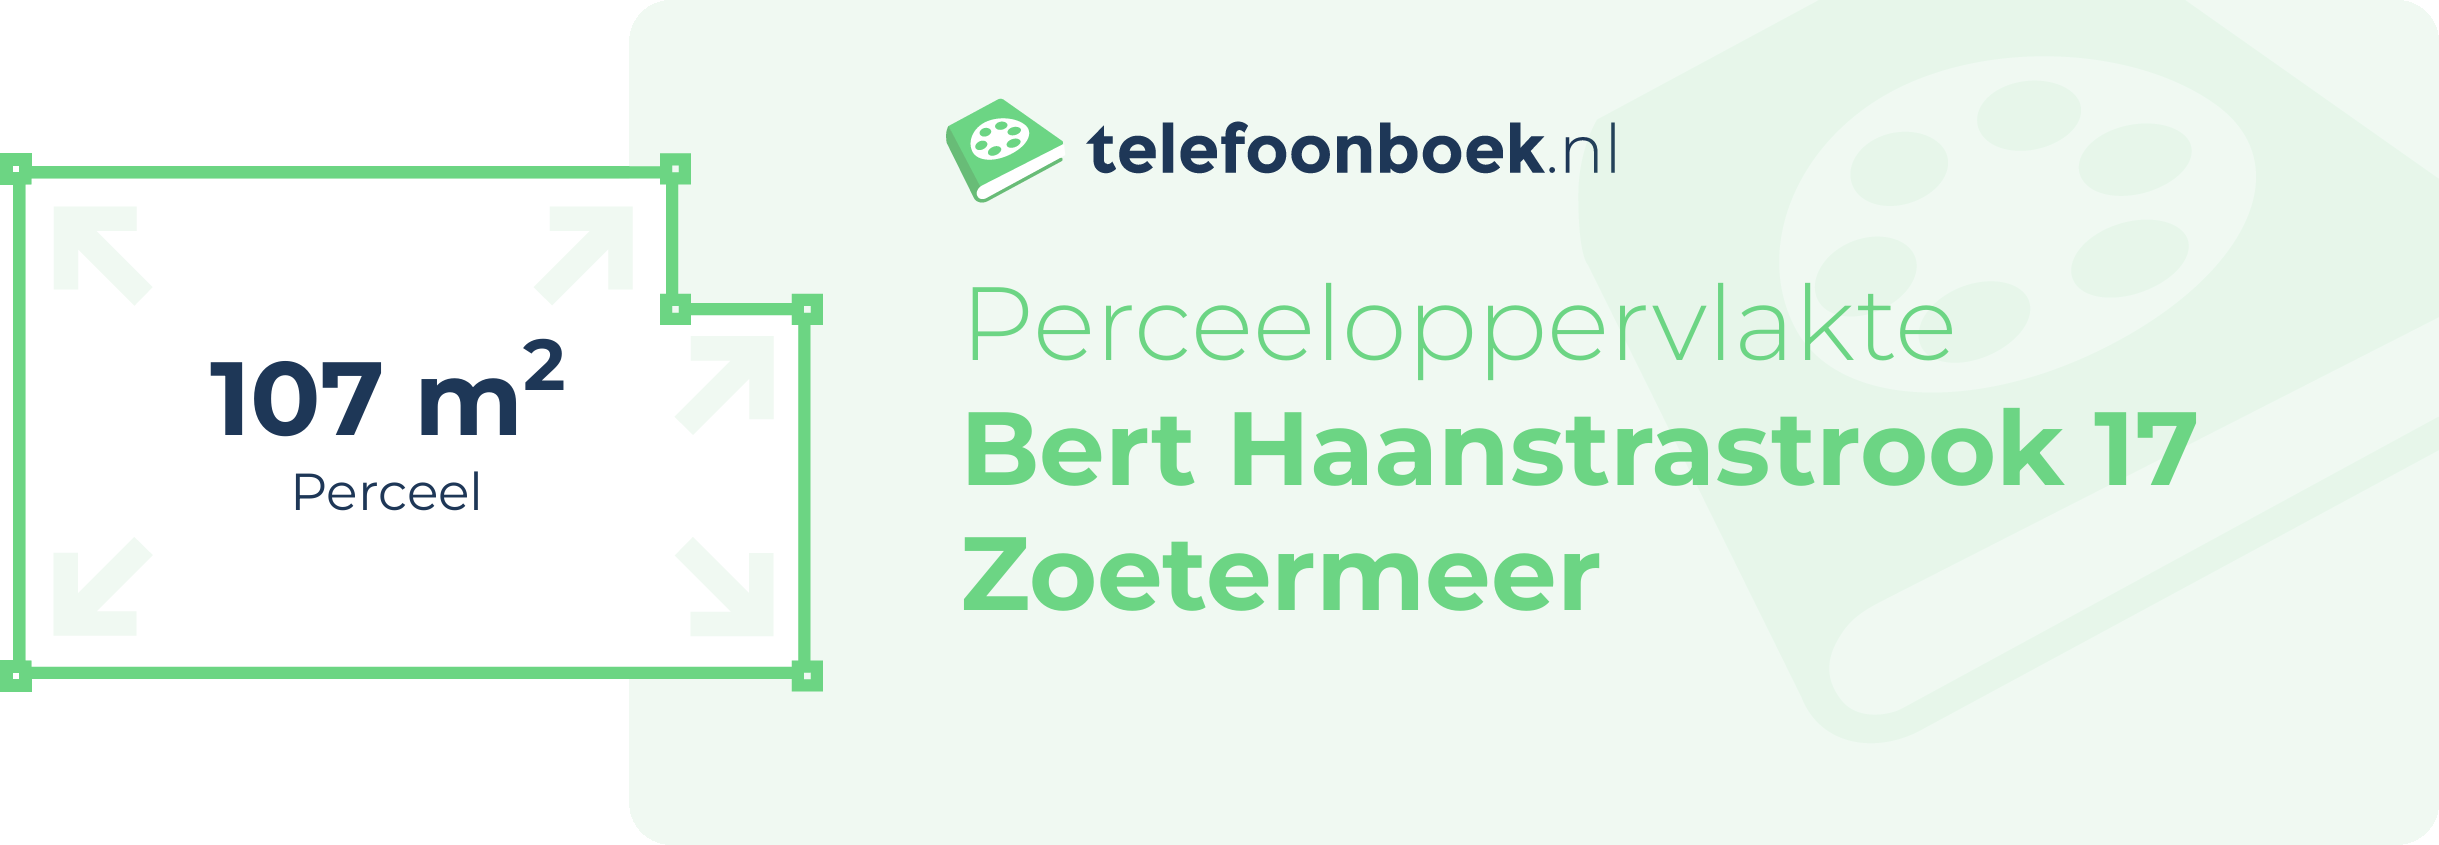 Perceeloppervlakte Bert Haanstrastrook 17 Zoetermeer